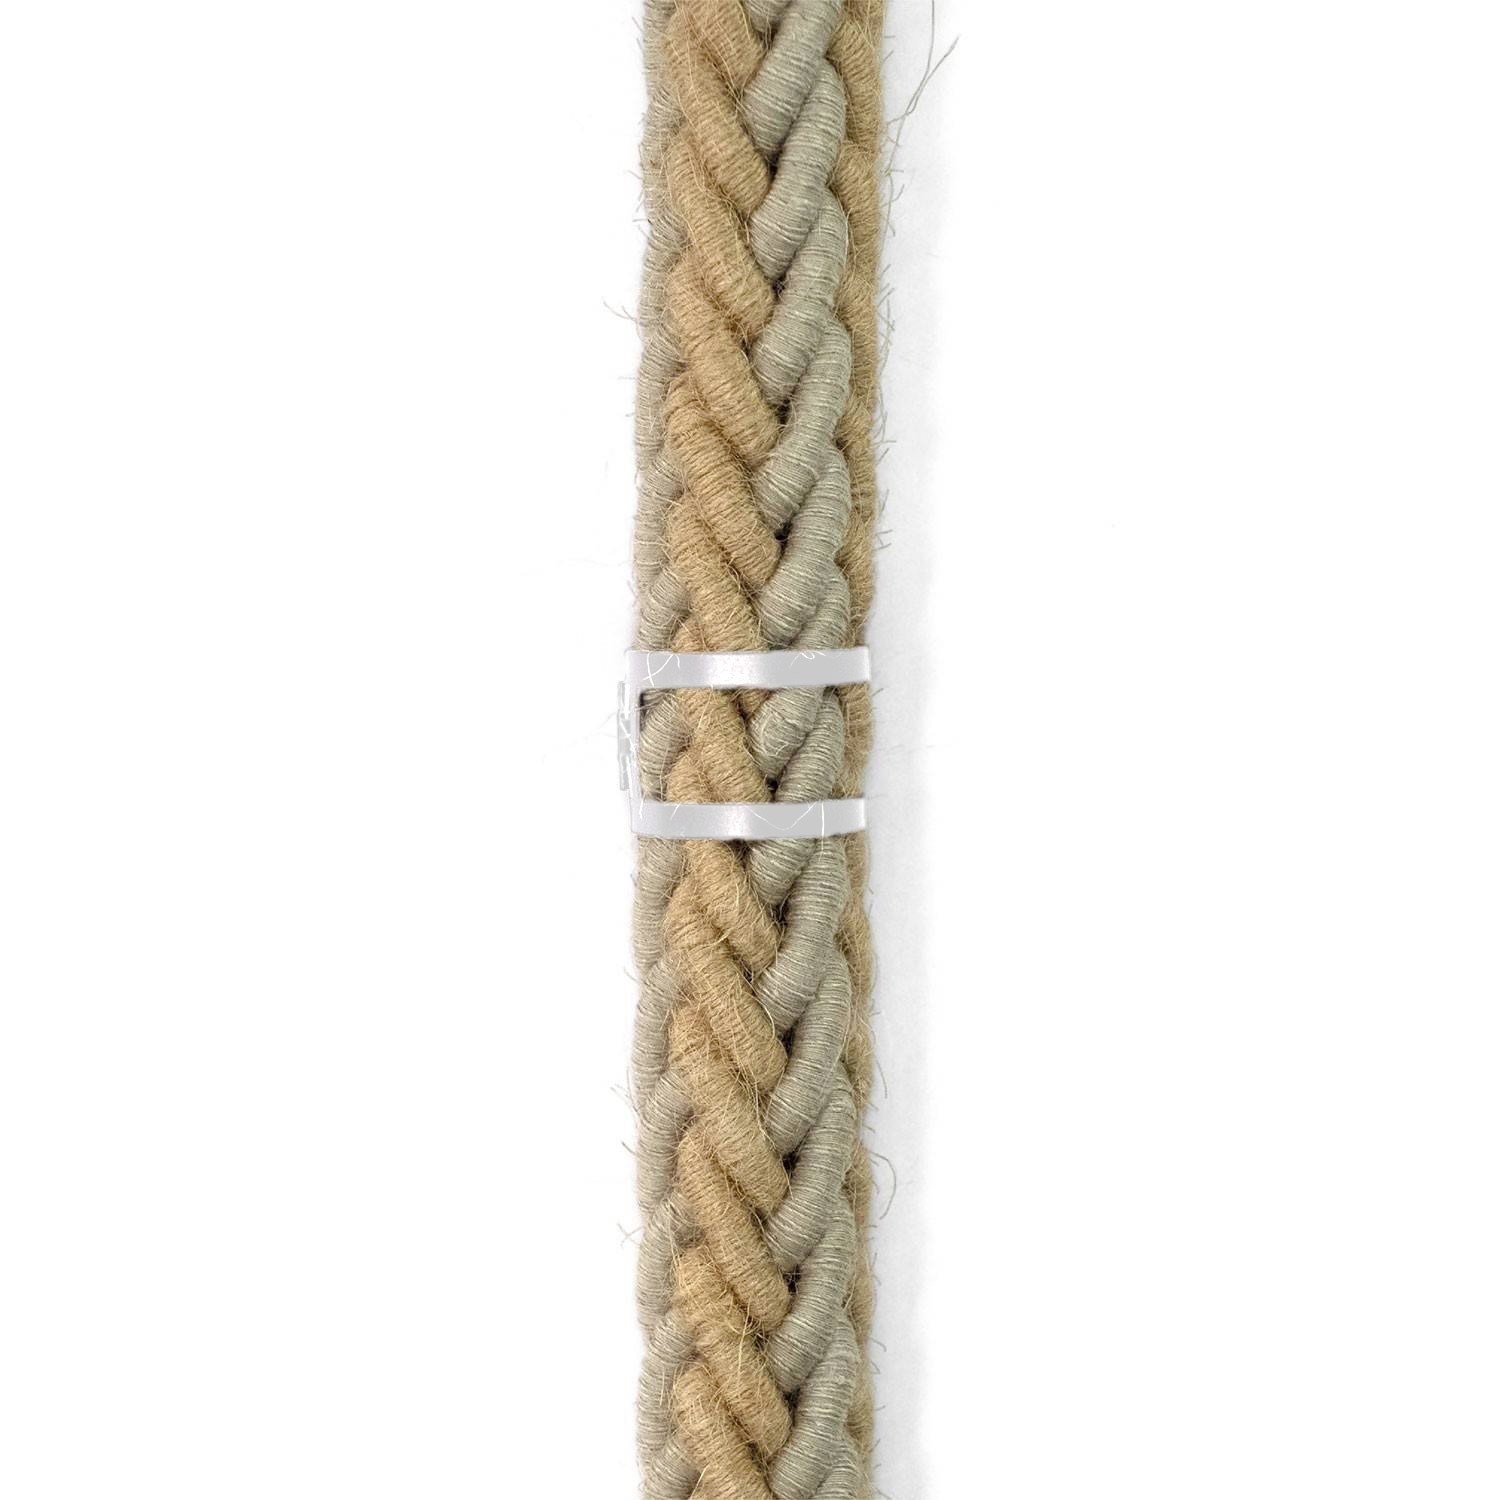 Kabelklämma i metall för repkablar med en diameter på 30 mm